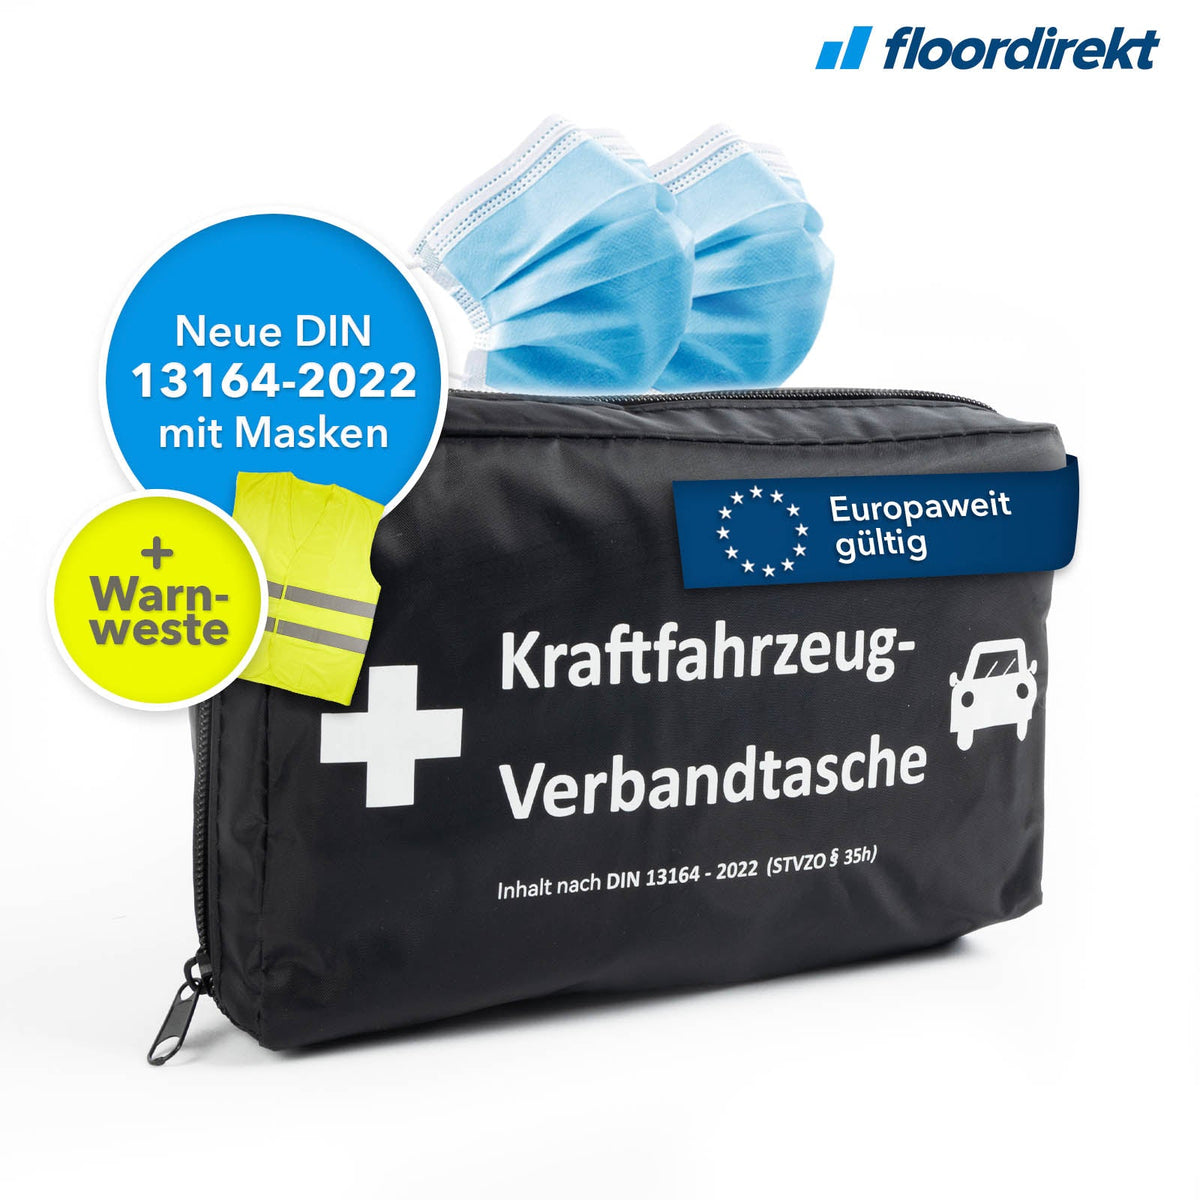 Kompakte KFZ-Verbandtasche und Erste-Hilfe-Set